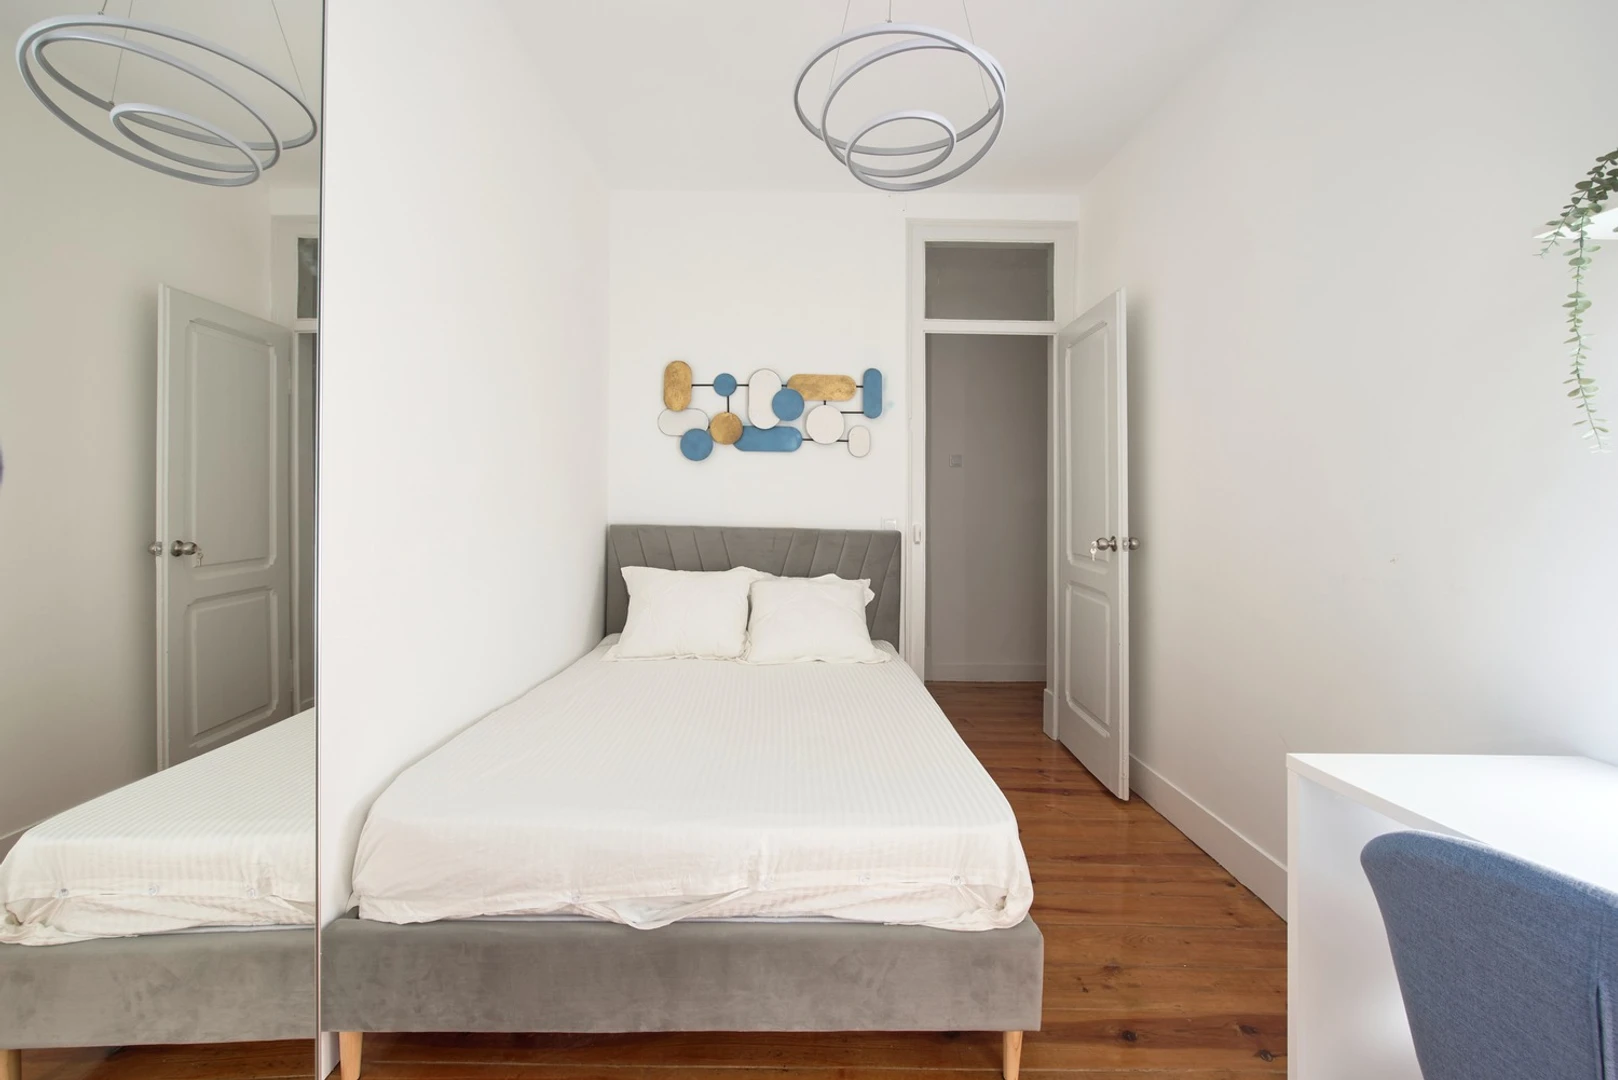 Alquiler de habitación en piso compartido en Lisboa